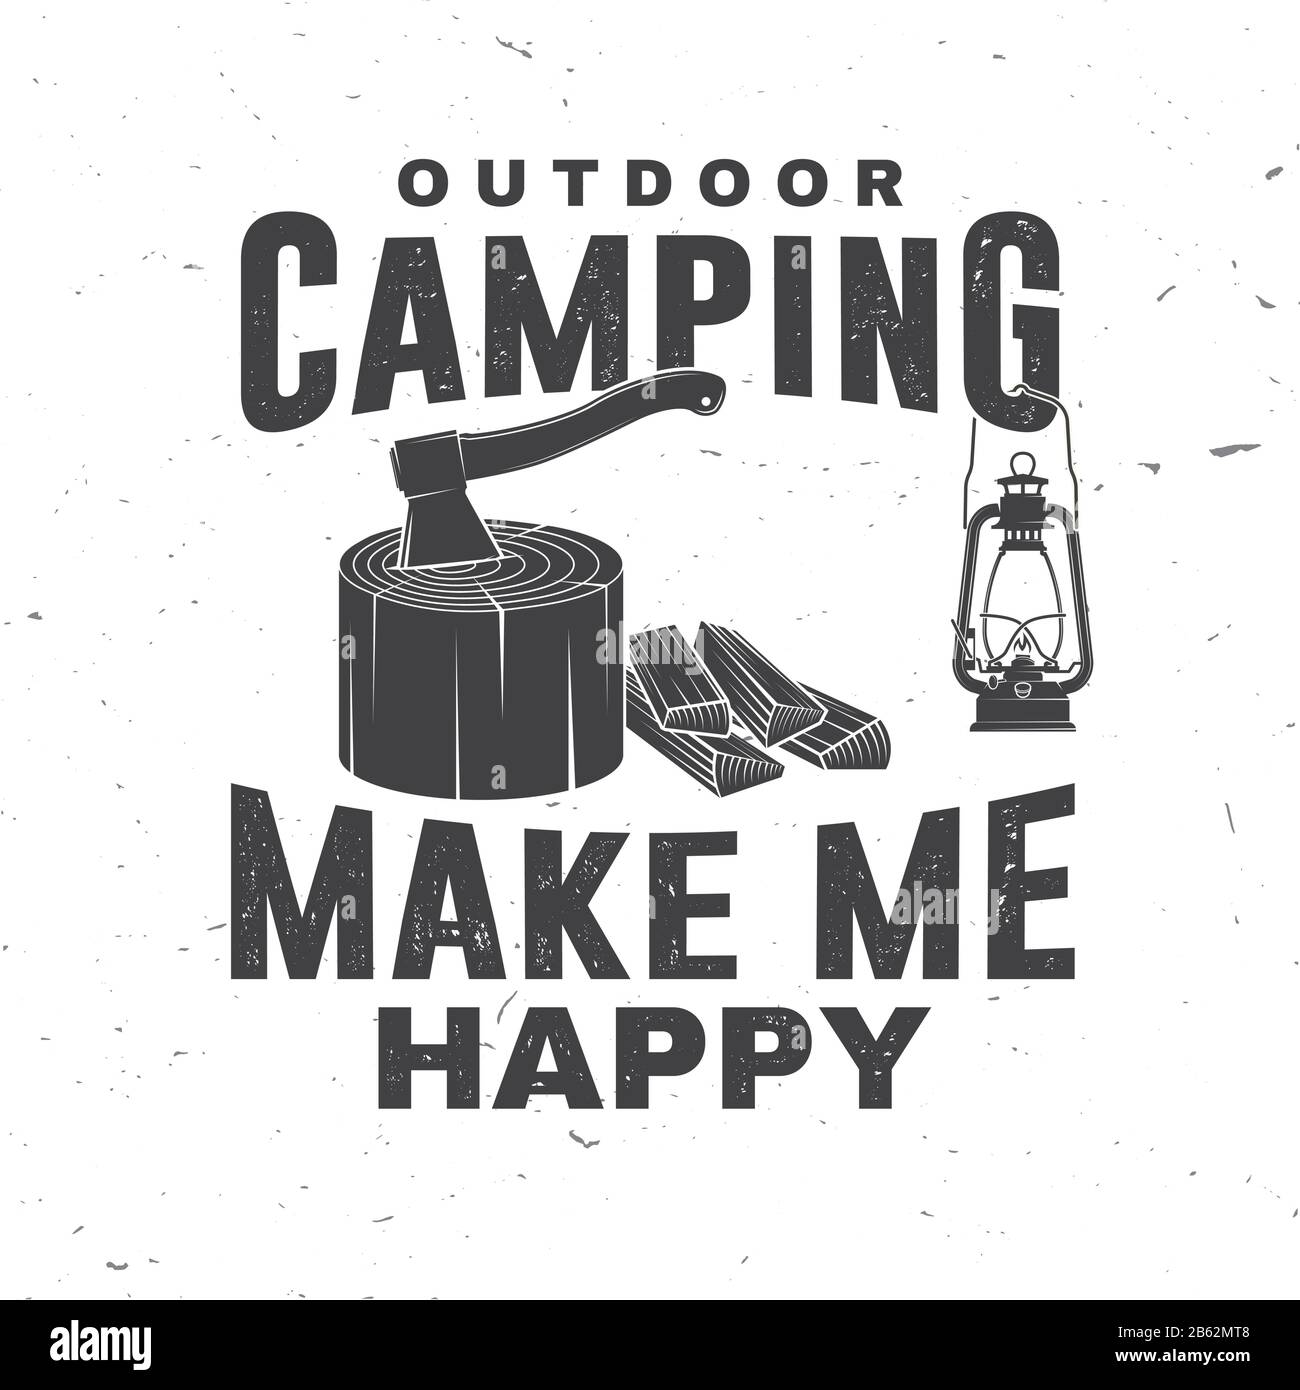 Camping im Freien macht mich glücklich. Vektorgrafiken. Konzept für Hemd oder Logo, Druck, Stempel oder T-Shirt. Vintage-Typografie-Design mit Laterne und Axt in stumpfer Silhouette. Stock Vektor